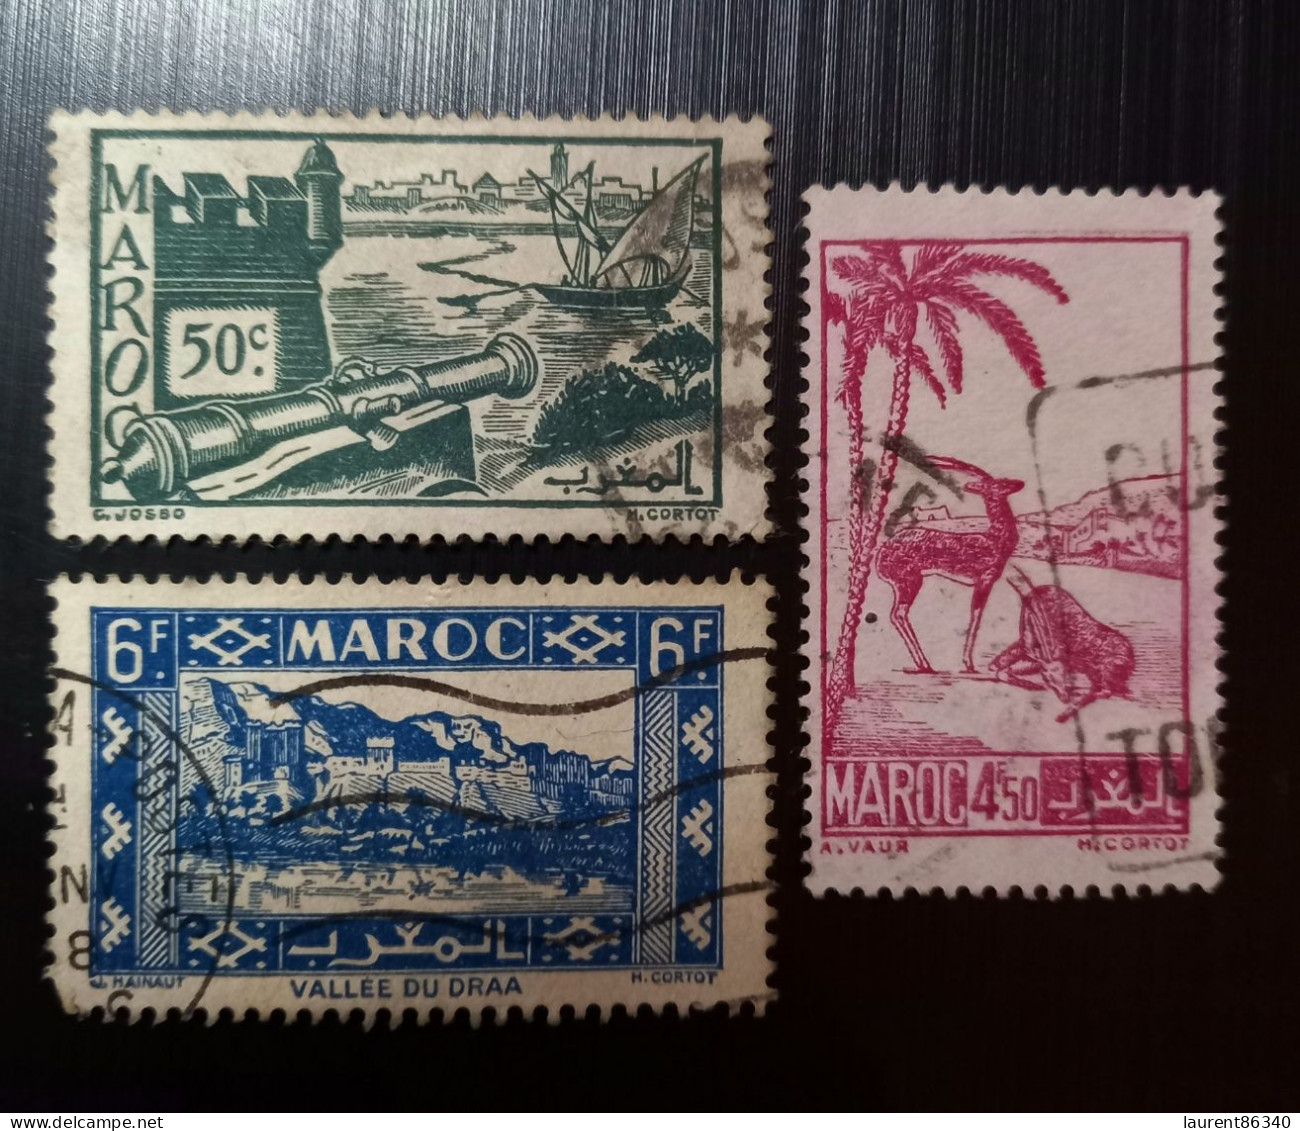 Maroc Poste Française 1945 Local Motives  Modèle: Cortot Gravure: C. Josso - Oblitérés